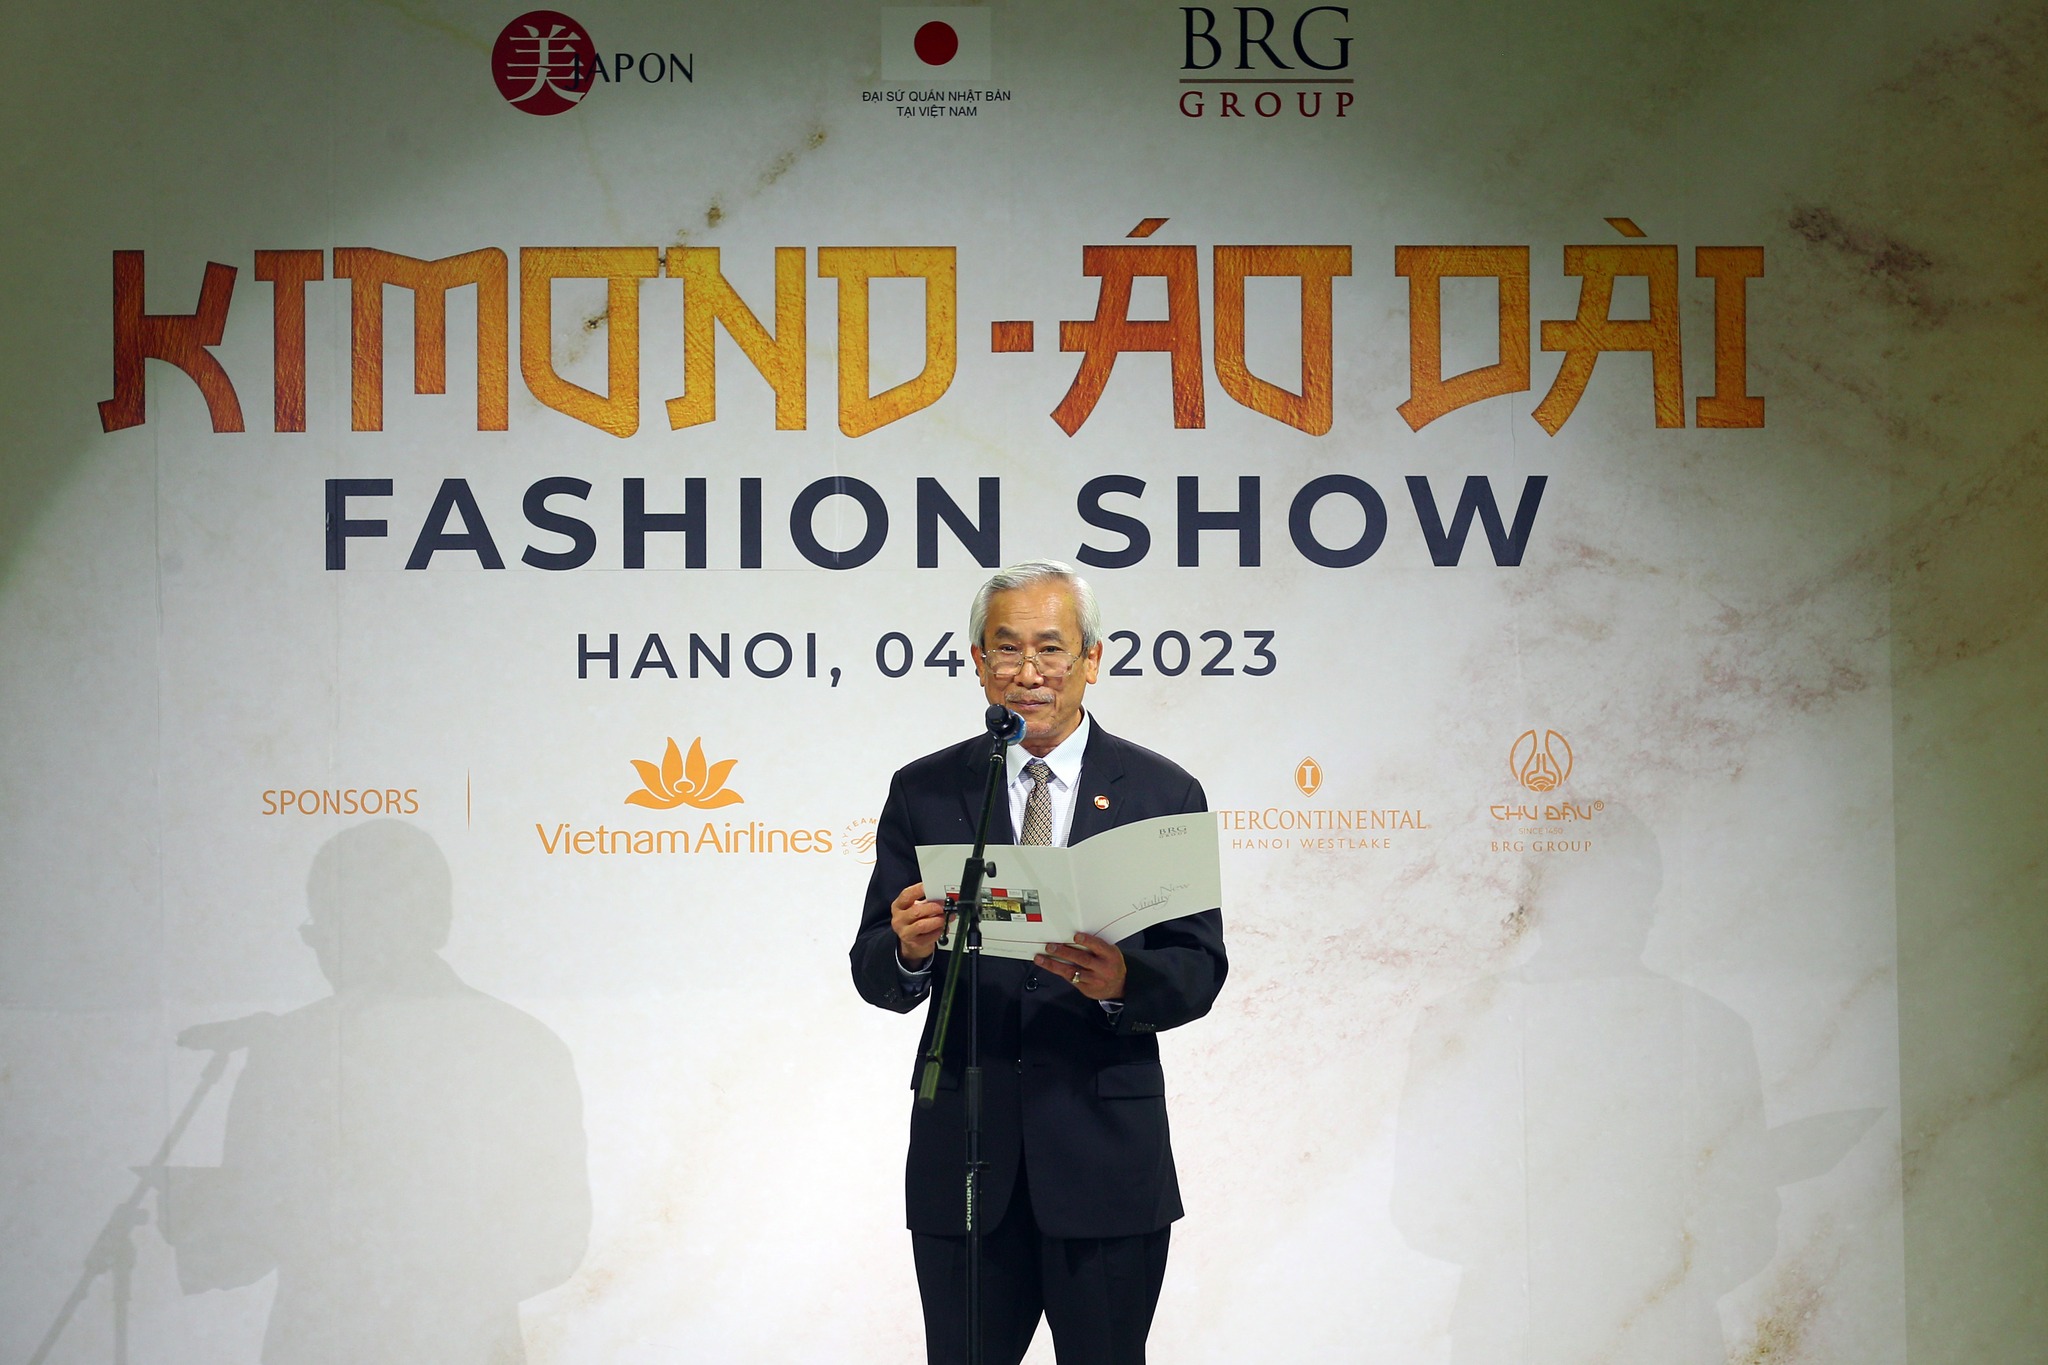 Cũng tại chương trình, ông Lê Hữu Báu, Tổng Giám đốc Tập đoàn BRG cho biết: “2023 cũng là năm đặc biệt khi Tập đoàn BRG kỷ niệm 30 năm thành lập. Không có điều gì vinh dự và tự hào hơn khi Tập đoàn được đồng tổ chức sự kiện giao lưu văn hóa đầy ý nghĩa như Kimono - Aodai Fashion Show. Tôi tin rằng, chương trình này sẽ trở thành một sự kiện văn hóa đặc sắc chào mừng 50 năm quan hệ ngoại giao giữa Việt Nam và Nhật Bản. Đồng thời, góp phần kiến tạo nền tảng cho quan hệ hai nước phát triển vươn tầm khu vực và thế giới, với vị thế ngang bằng, cùng mang lại lợi ích cho nhau, theo định hướng “Việt - Nhật đồng hành - Hướng tới tương lai, vươn tầm thế giới”.